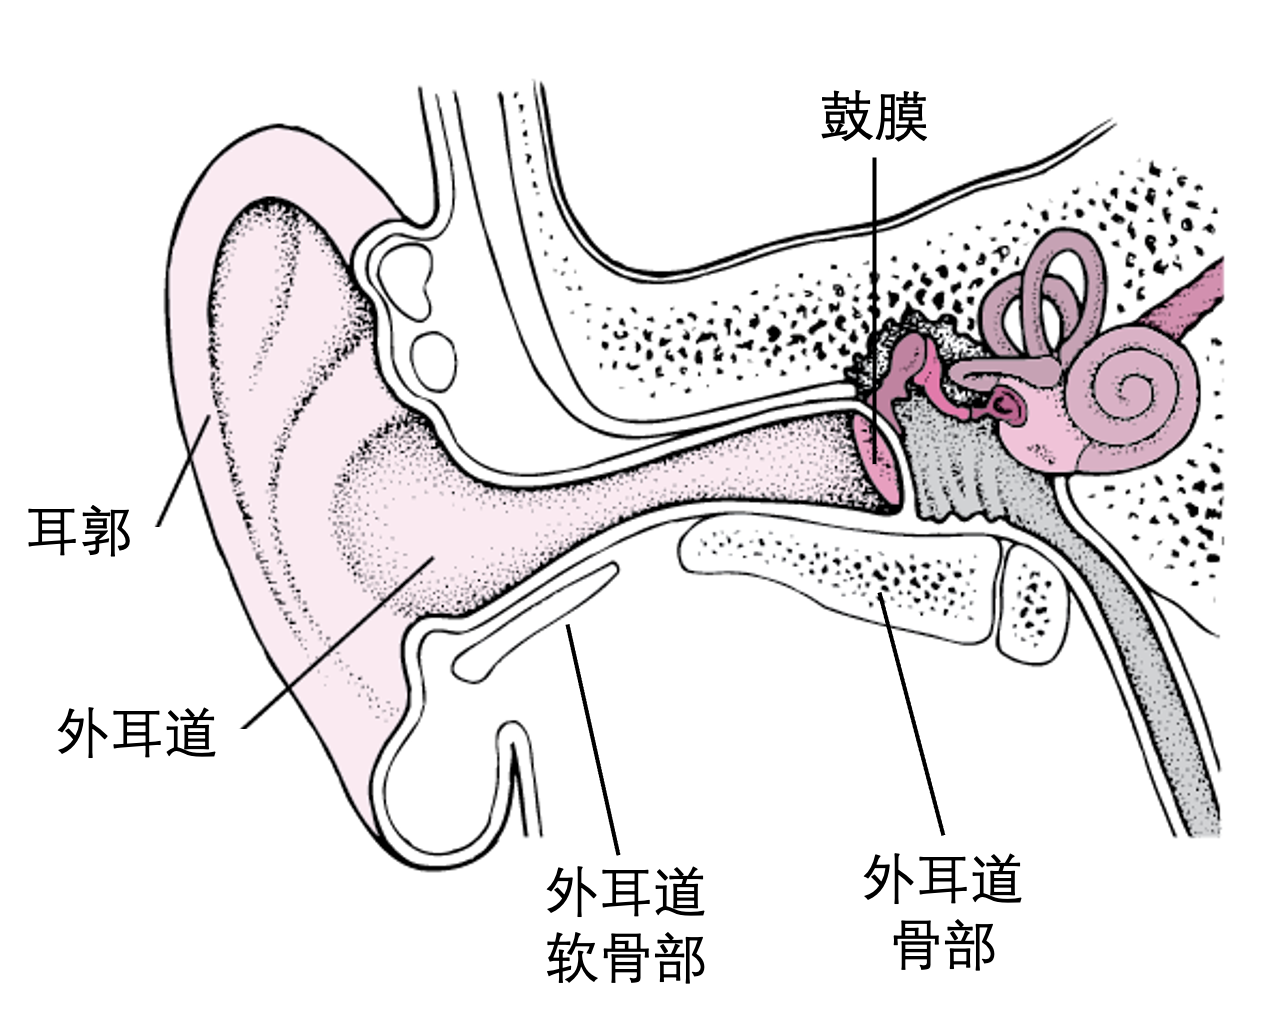 耳道:耳絡,耳朵的結構知識,如何避免噪音,_中文百科全書